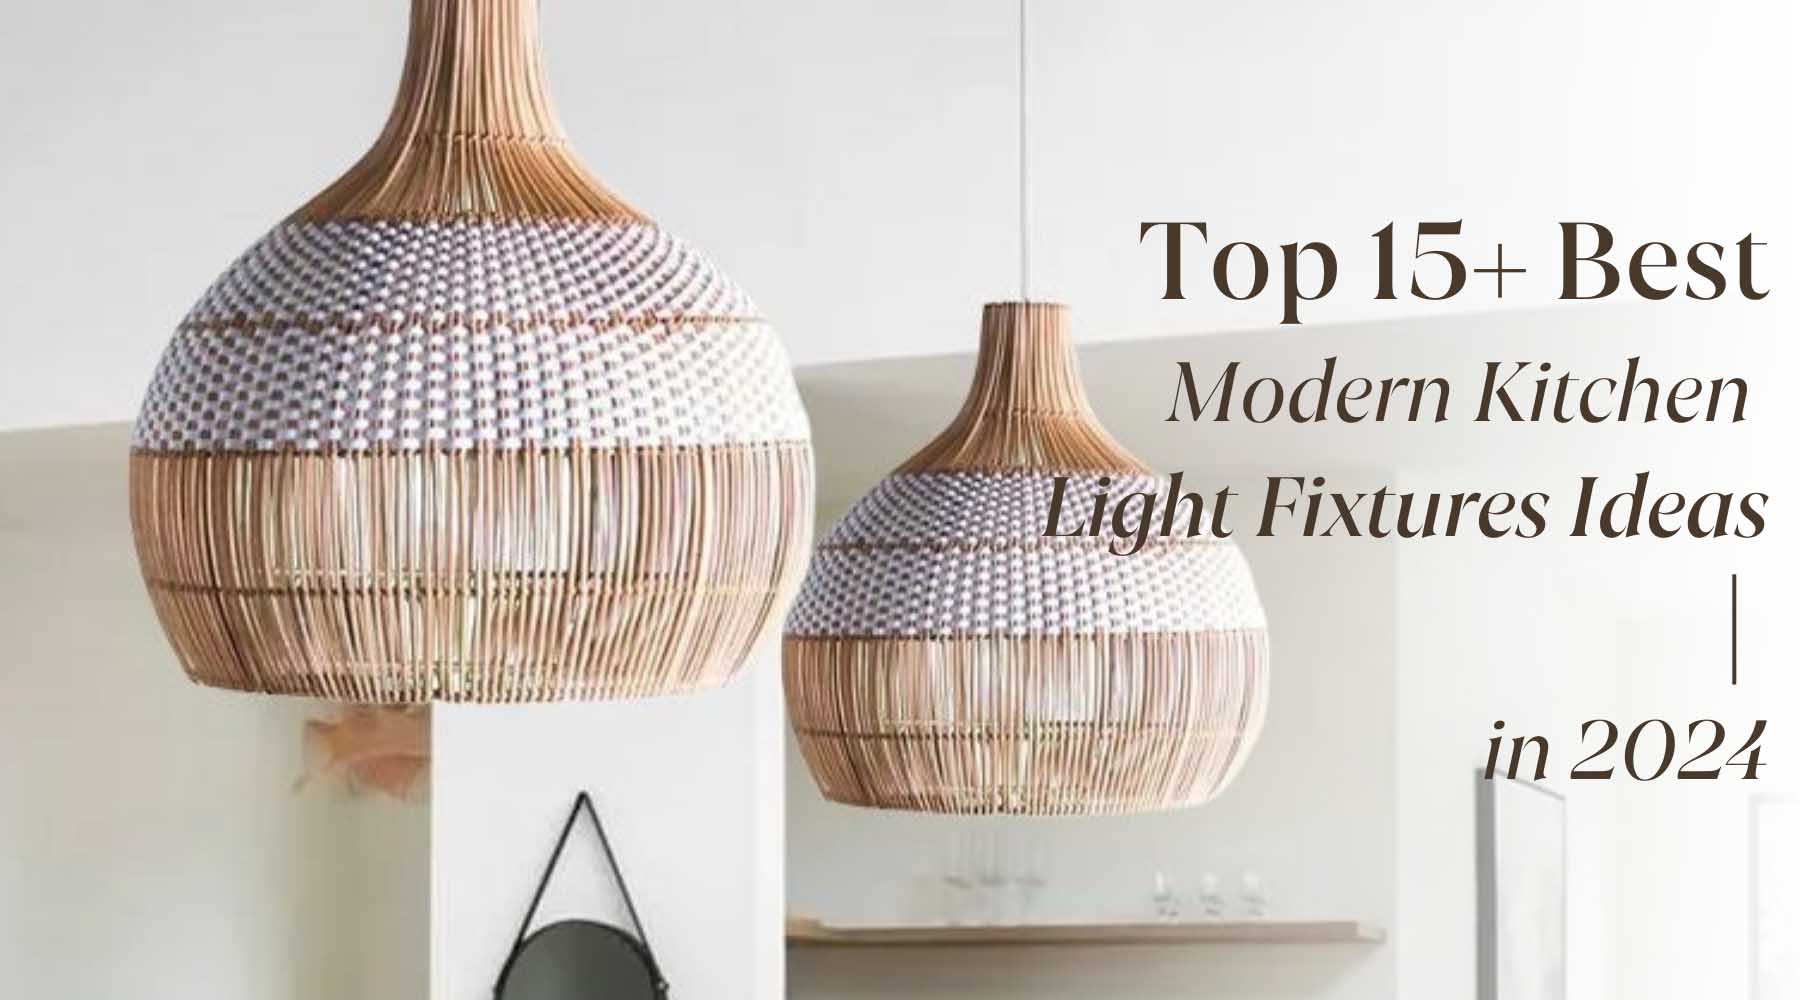 modern kitchen light fixtures ideas trends